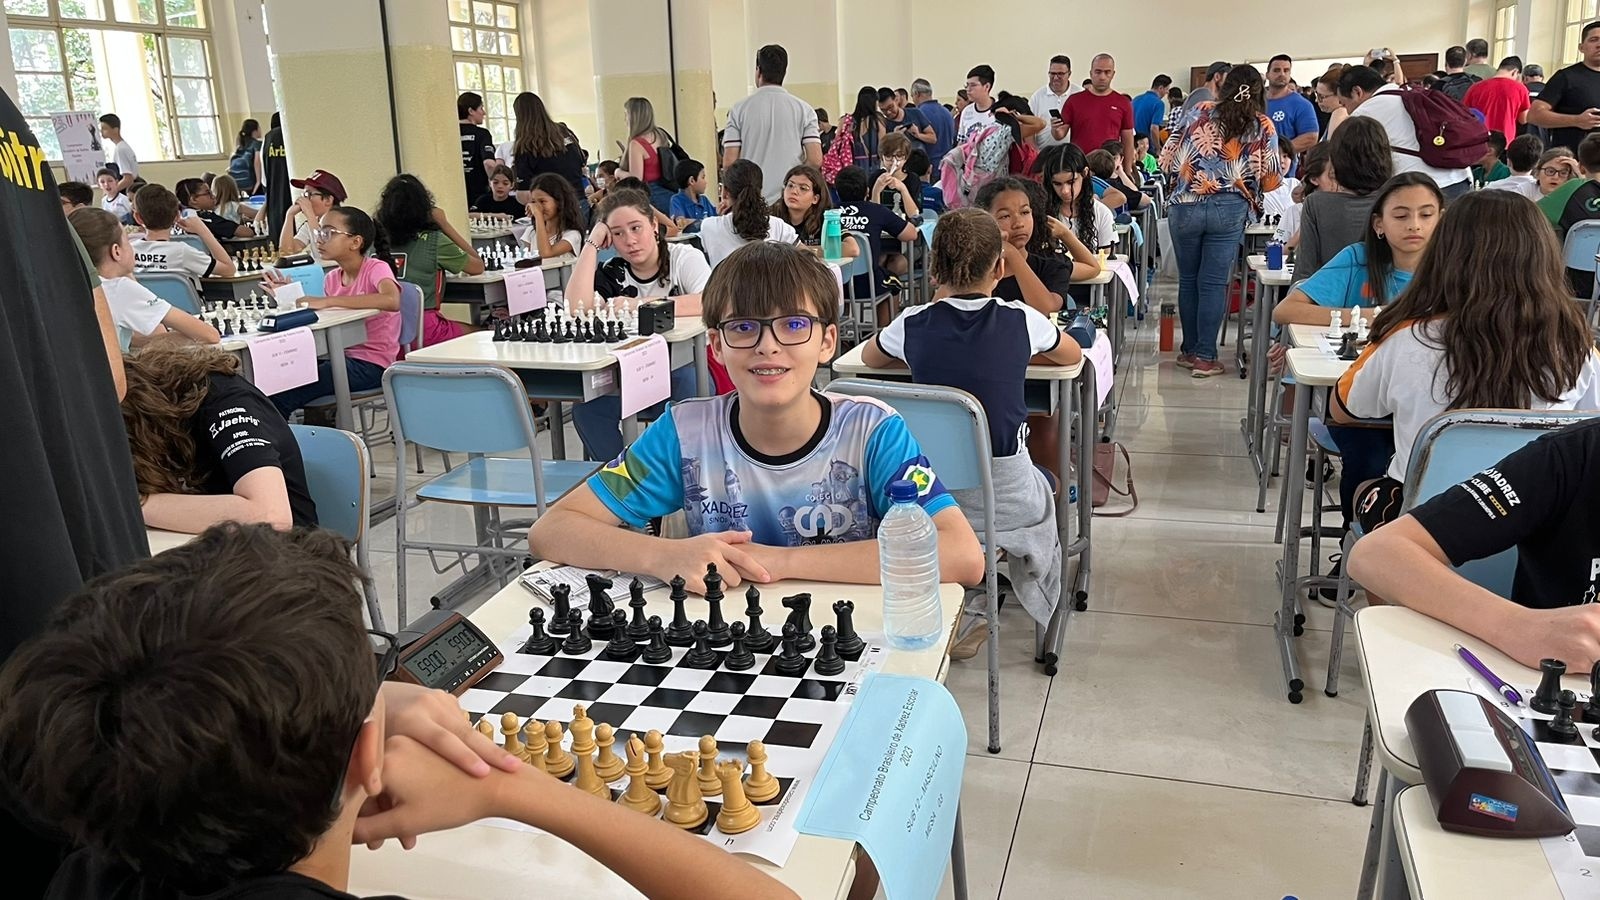 Enxadristas de MS se destacam no Brasileiro de Xadrez Escolar